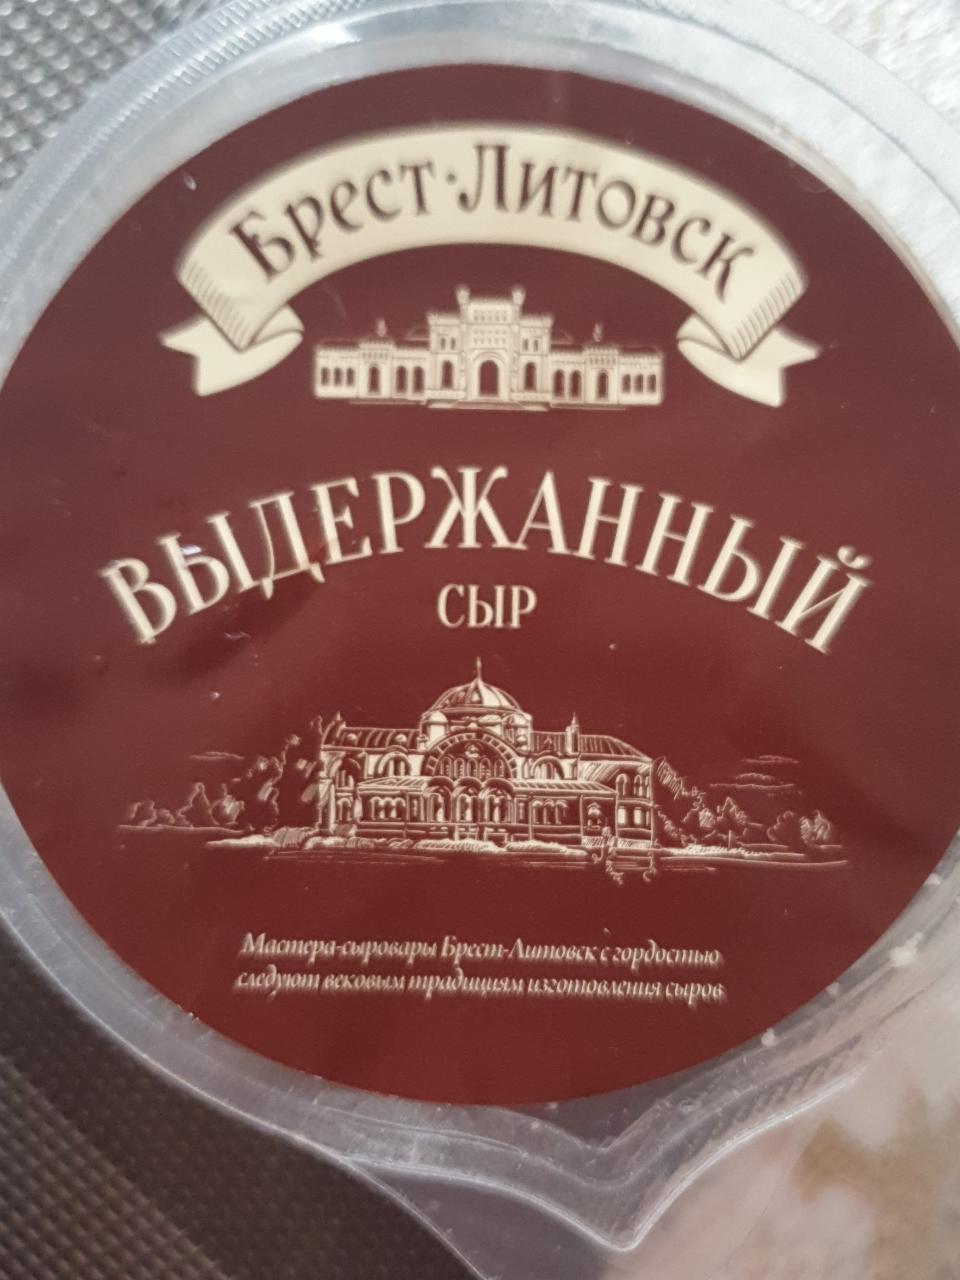 Фото - Сыр твёрдый выдержанный 45% экстра Брест-Литовск